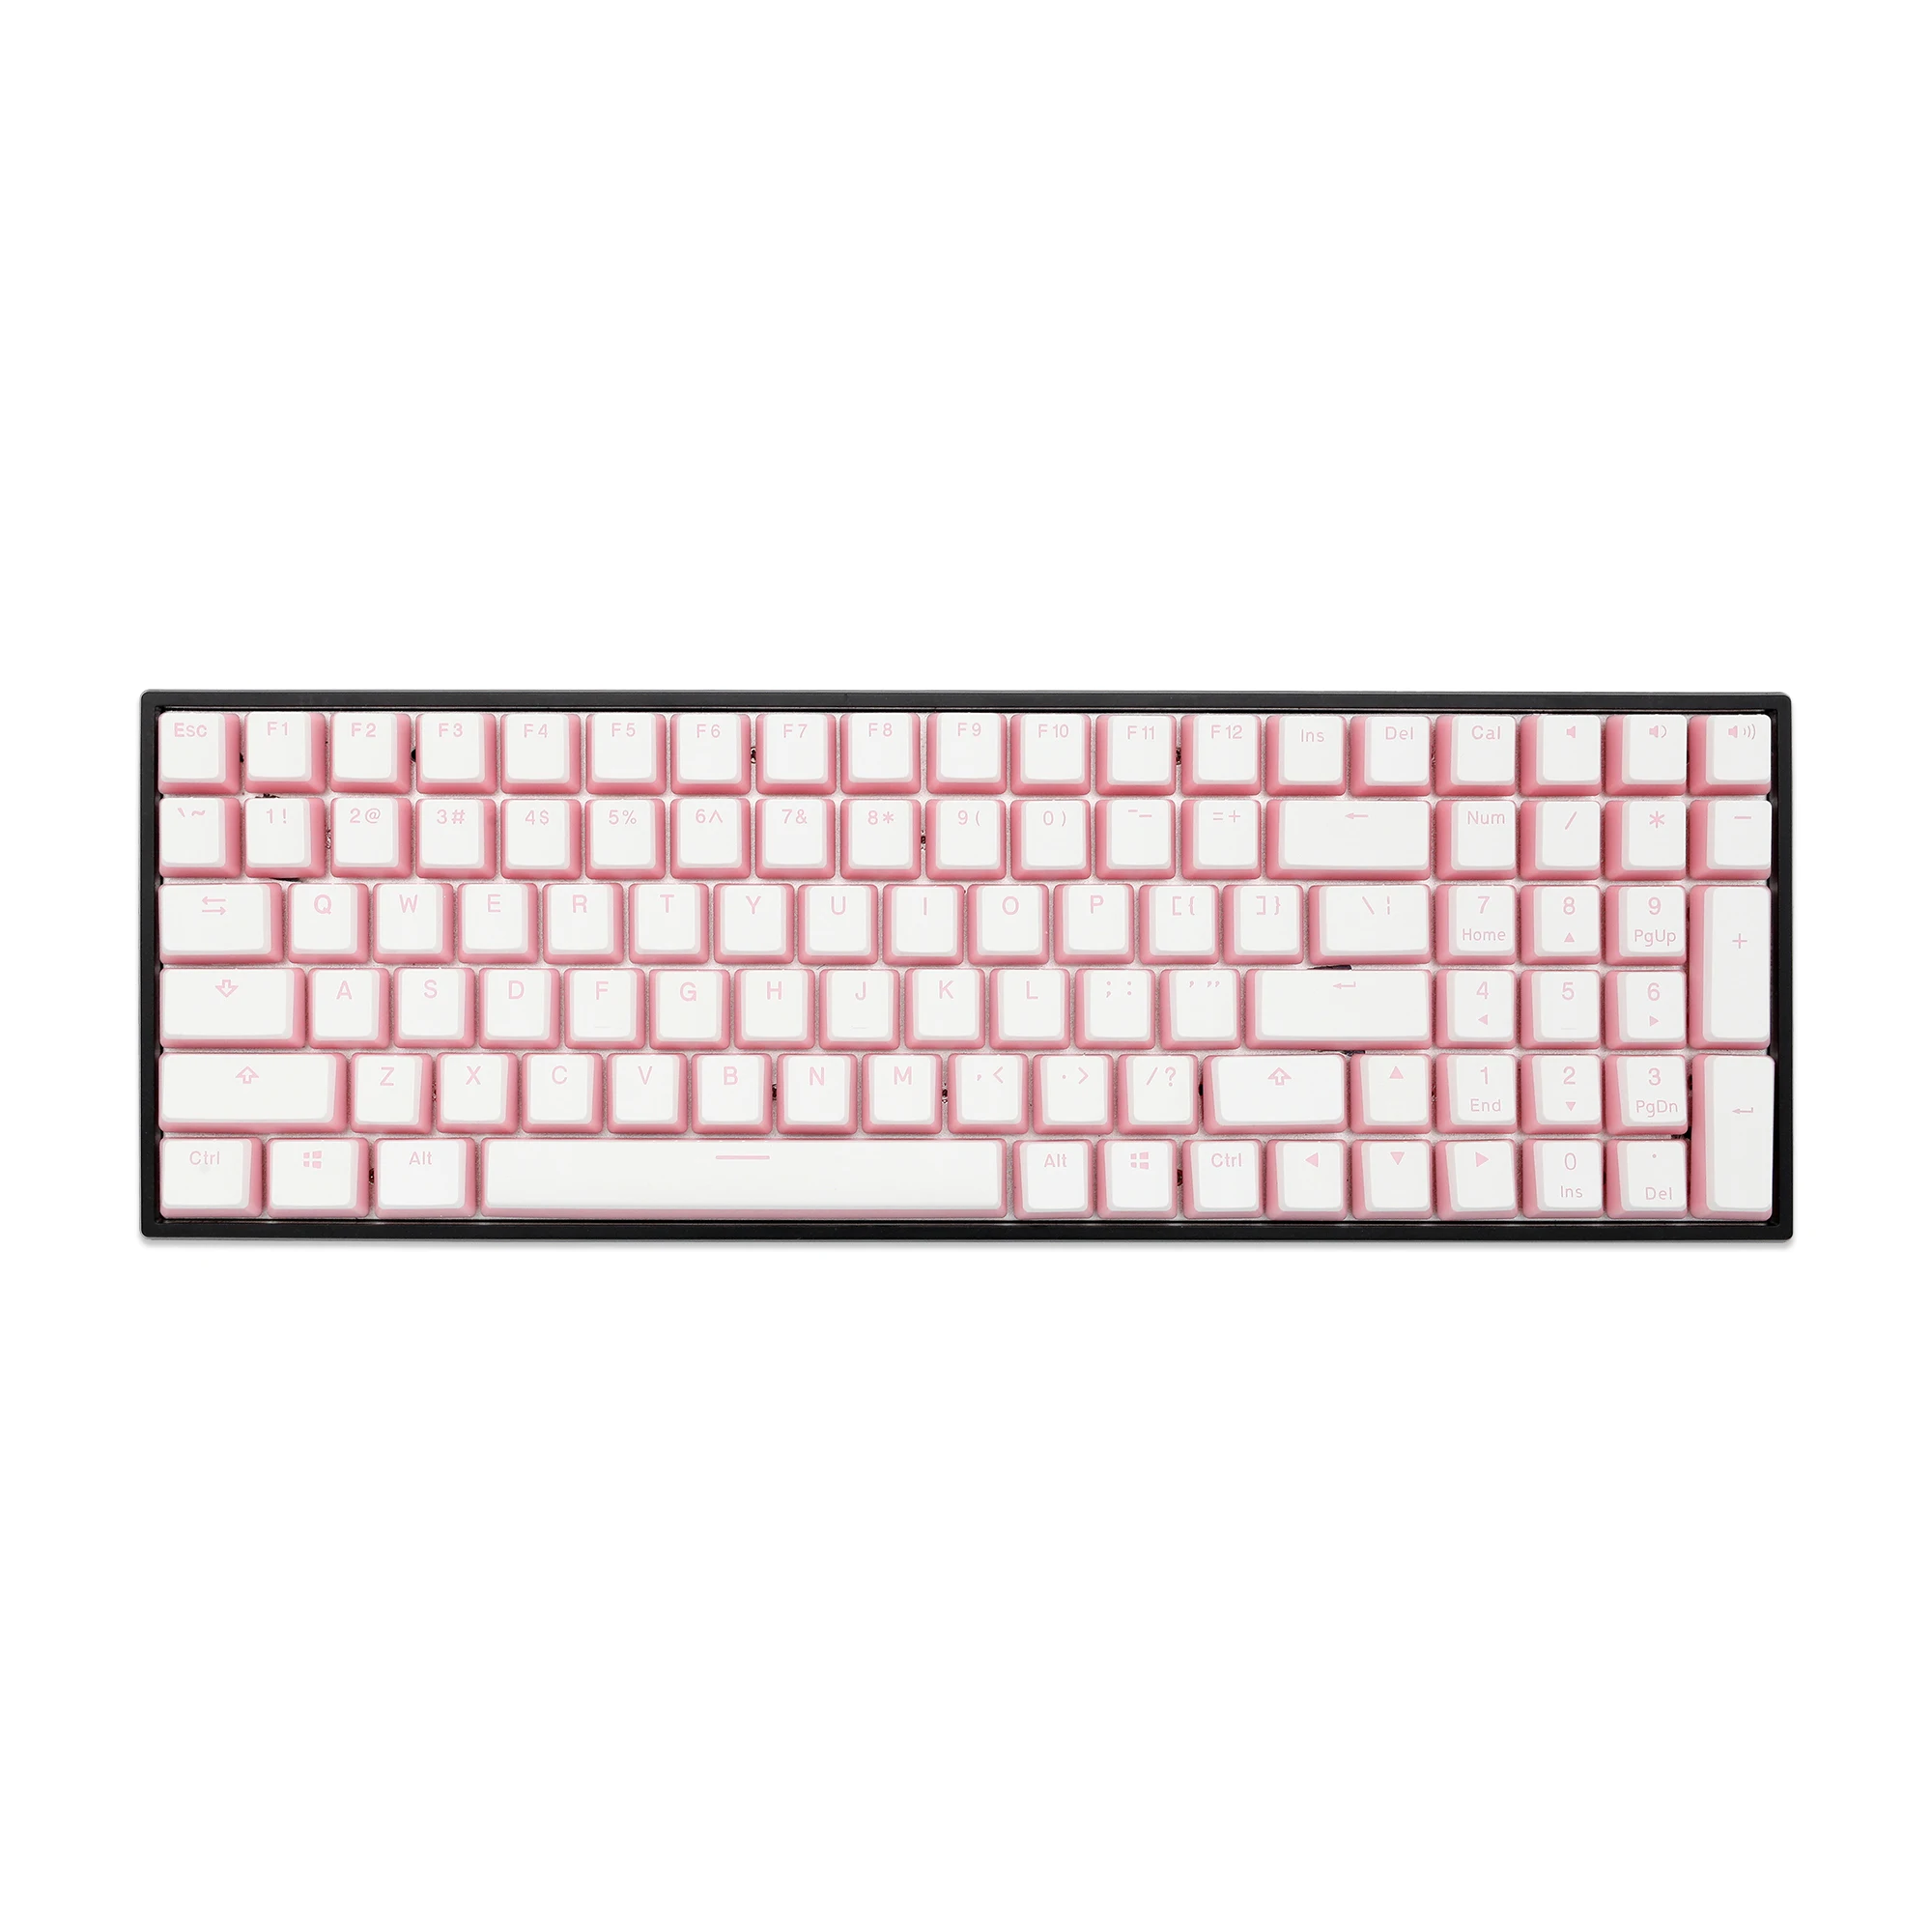 [Только клавиатура] Pudding doubleshot keycap V2 pbt oem с подсветкой для клавиатуры Розовый Белый 60 87 tkl 104 108 ansi iso xd64 bm60 bm65